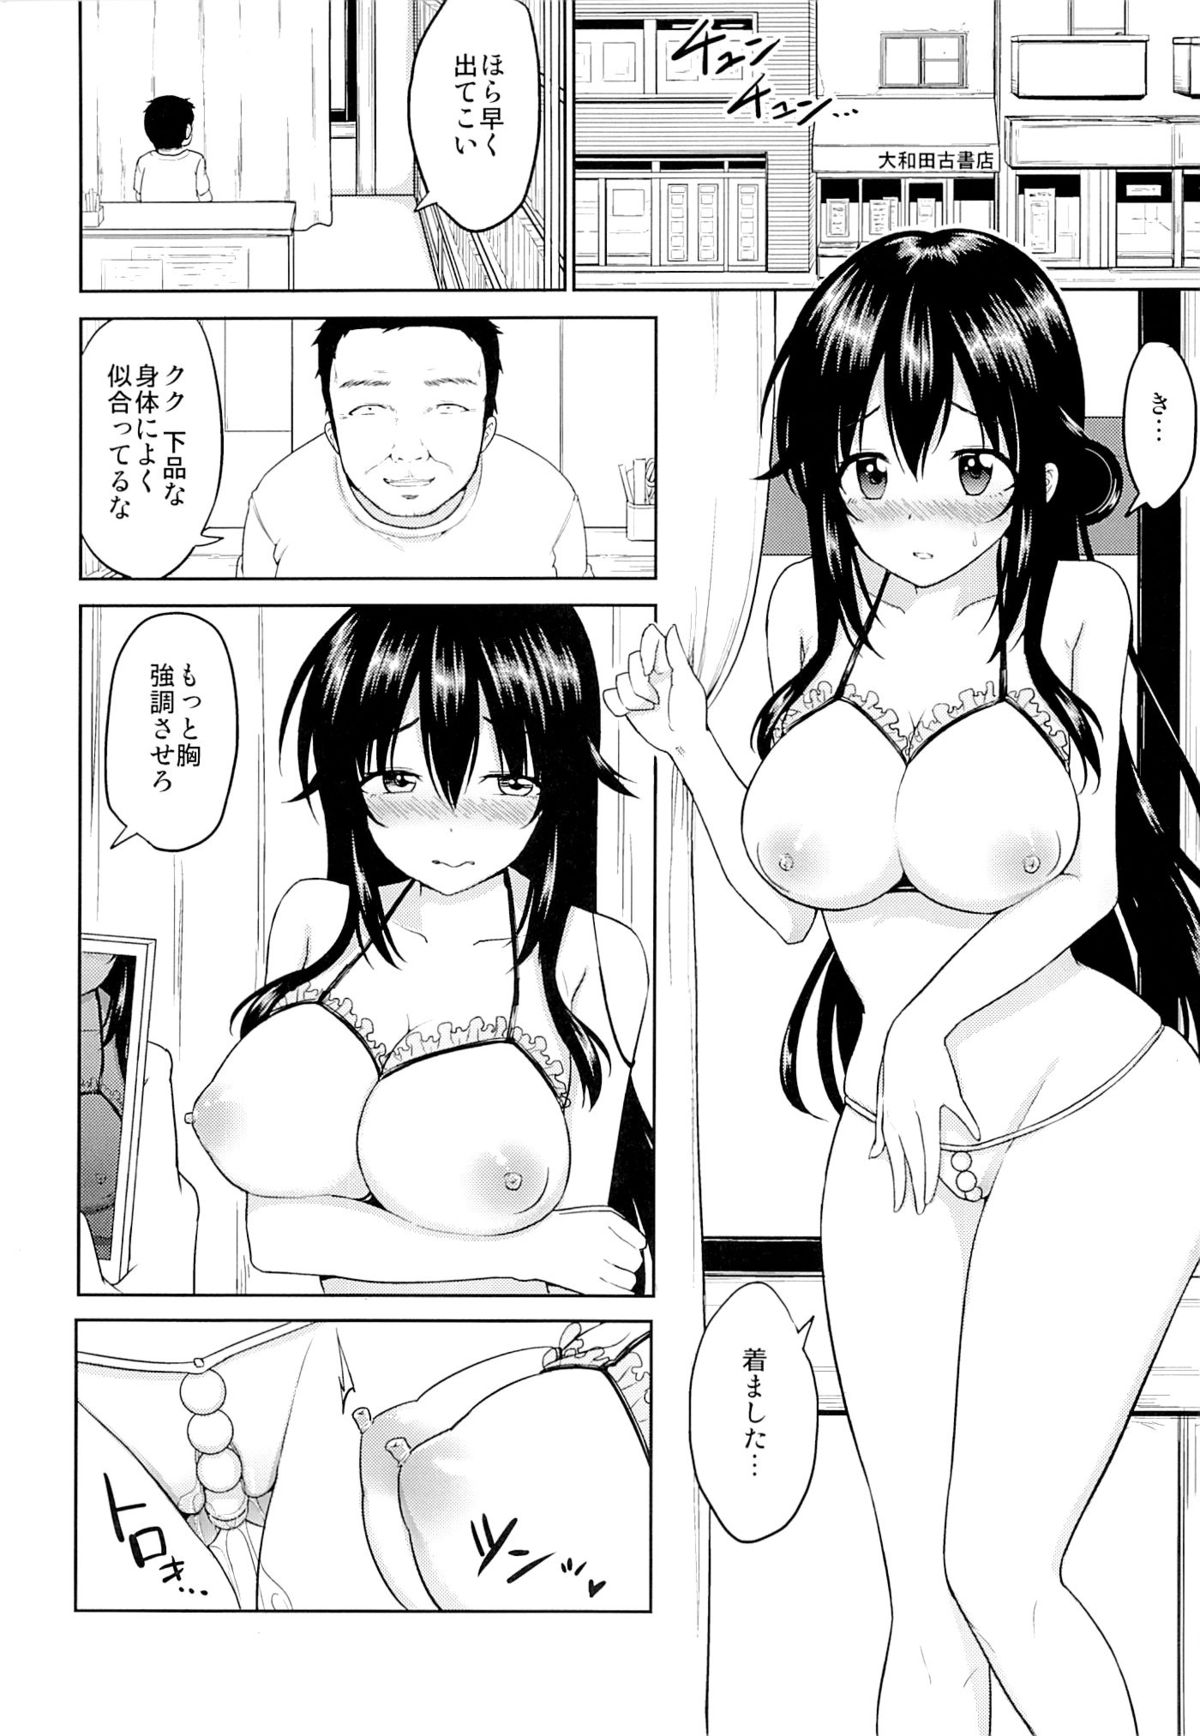 (C89) [Toitoikai (Toitoi)] Sachi-chan no Arbeit 3 page 3 full